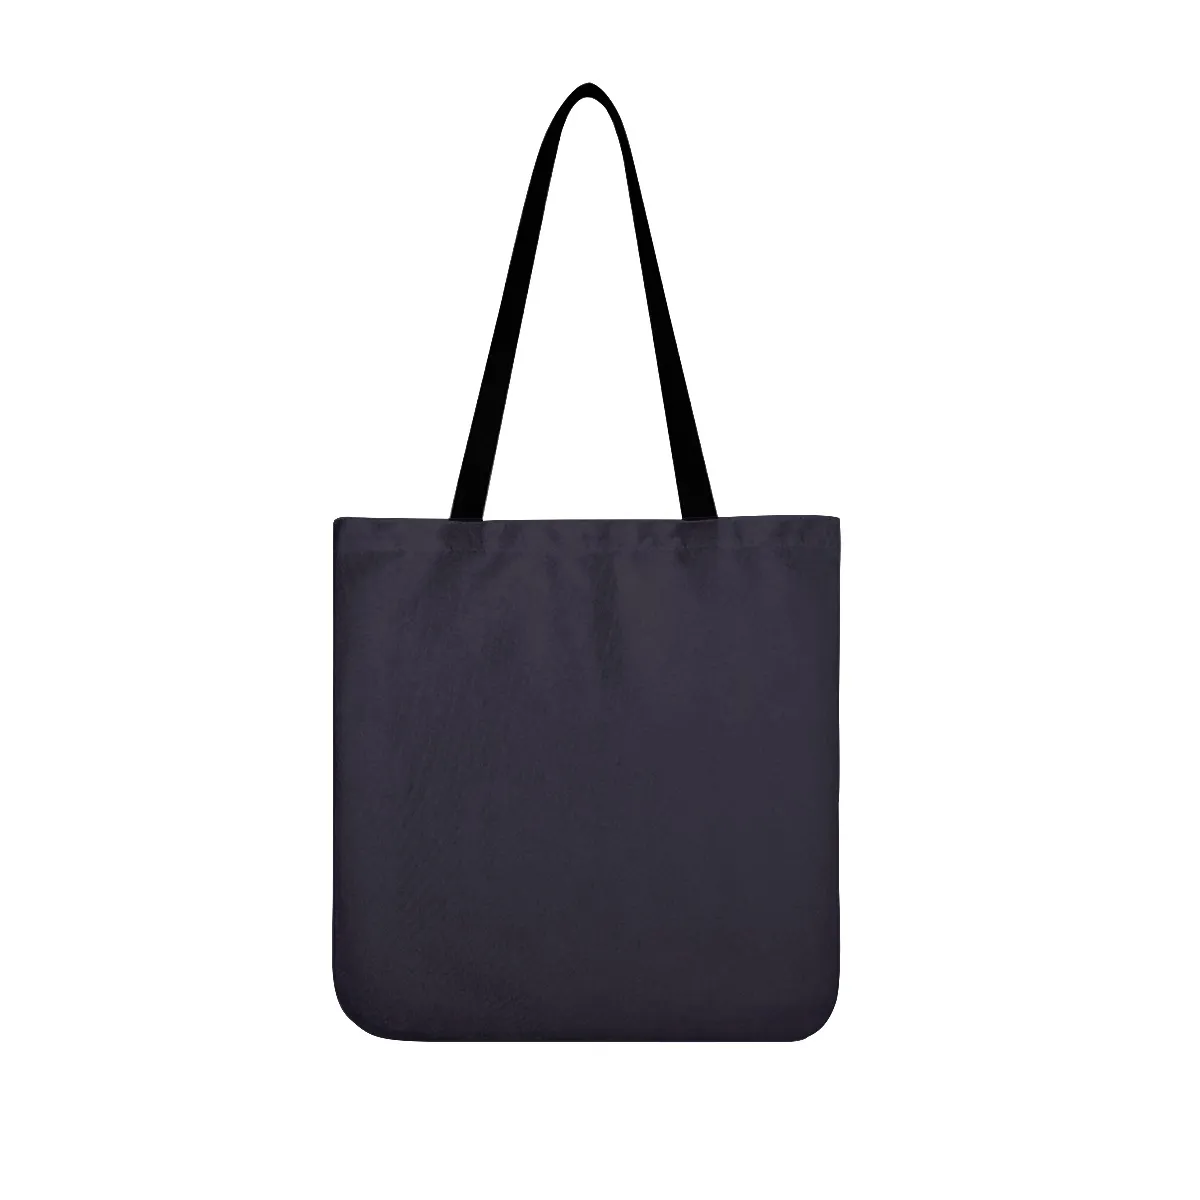 Diy sacos de pano personalizado das mulheres dos homens sacos de embreagem totes senhora mochila profissional simplicidade personalizado presentes casal exclusivo 25563